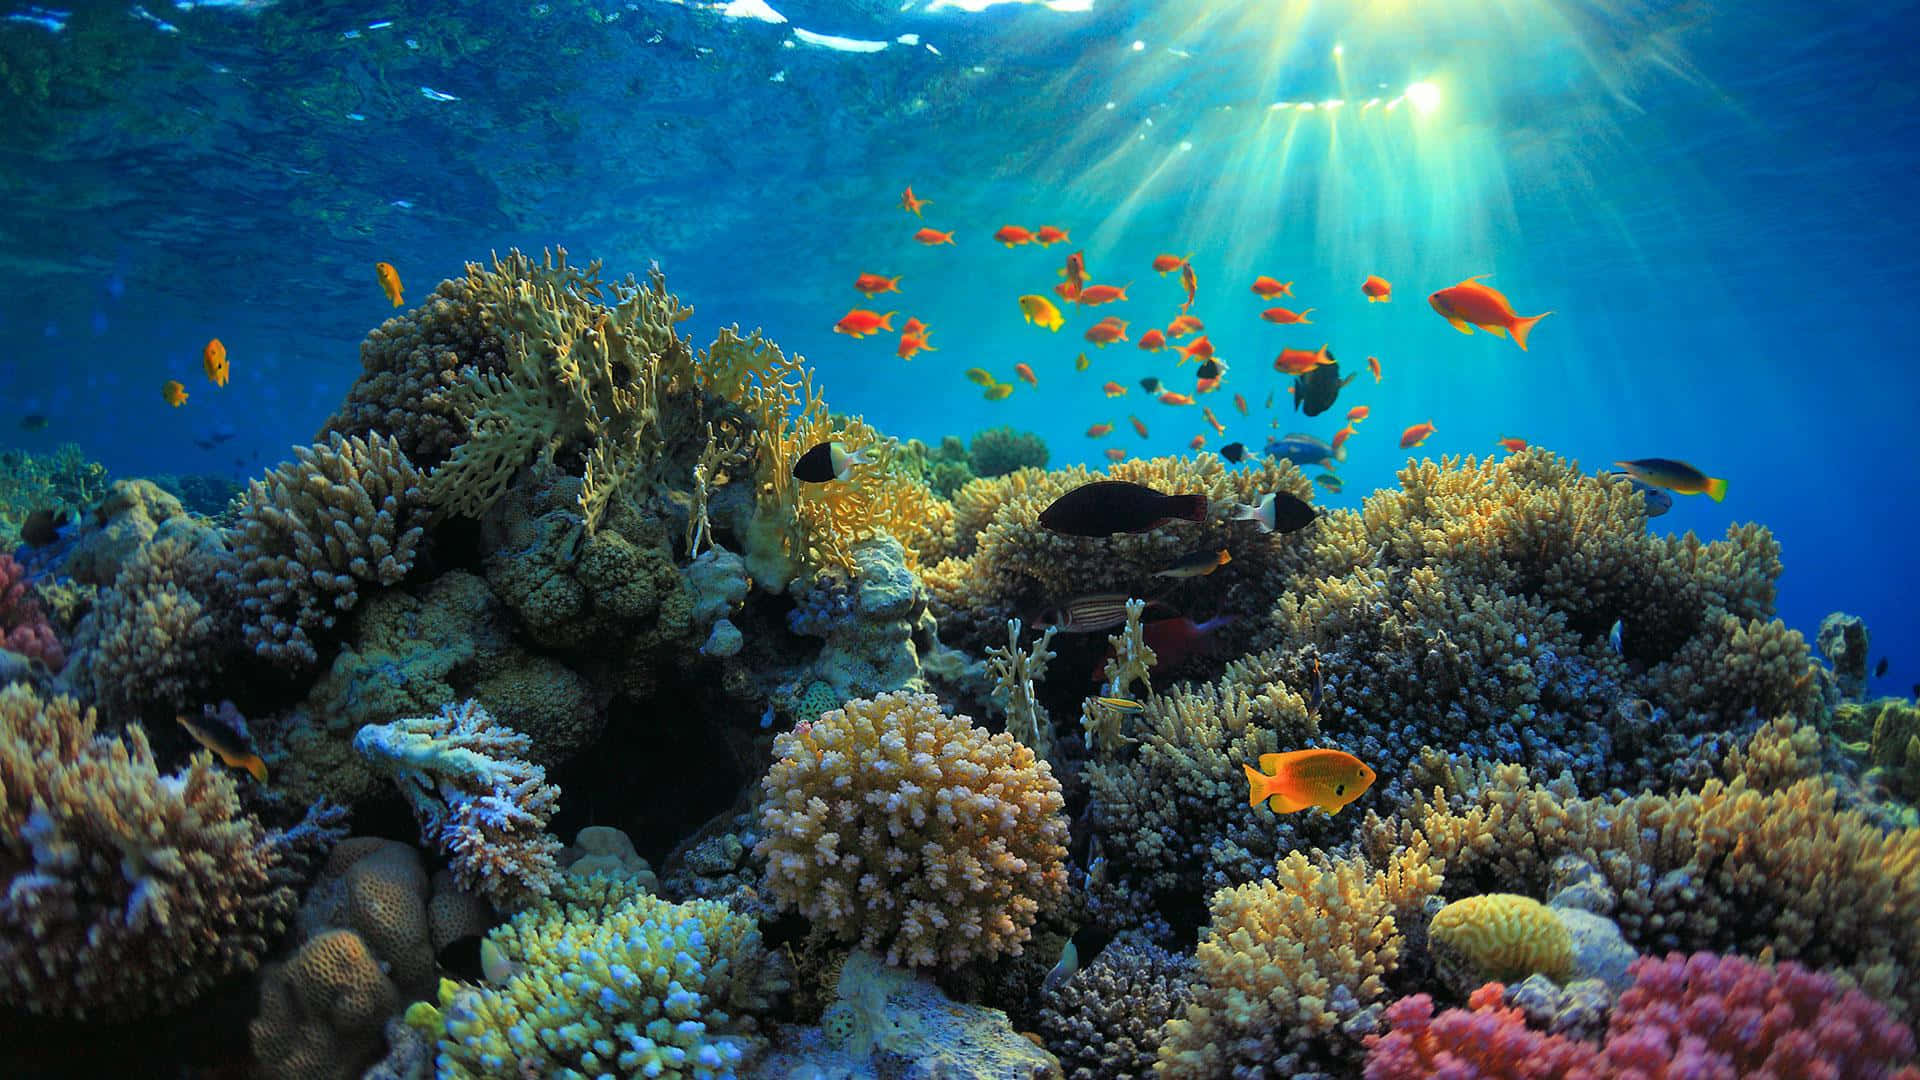 Imagendel Arrecife De Coral Del Parque Natural Ras Mohamed.